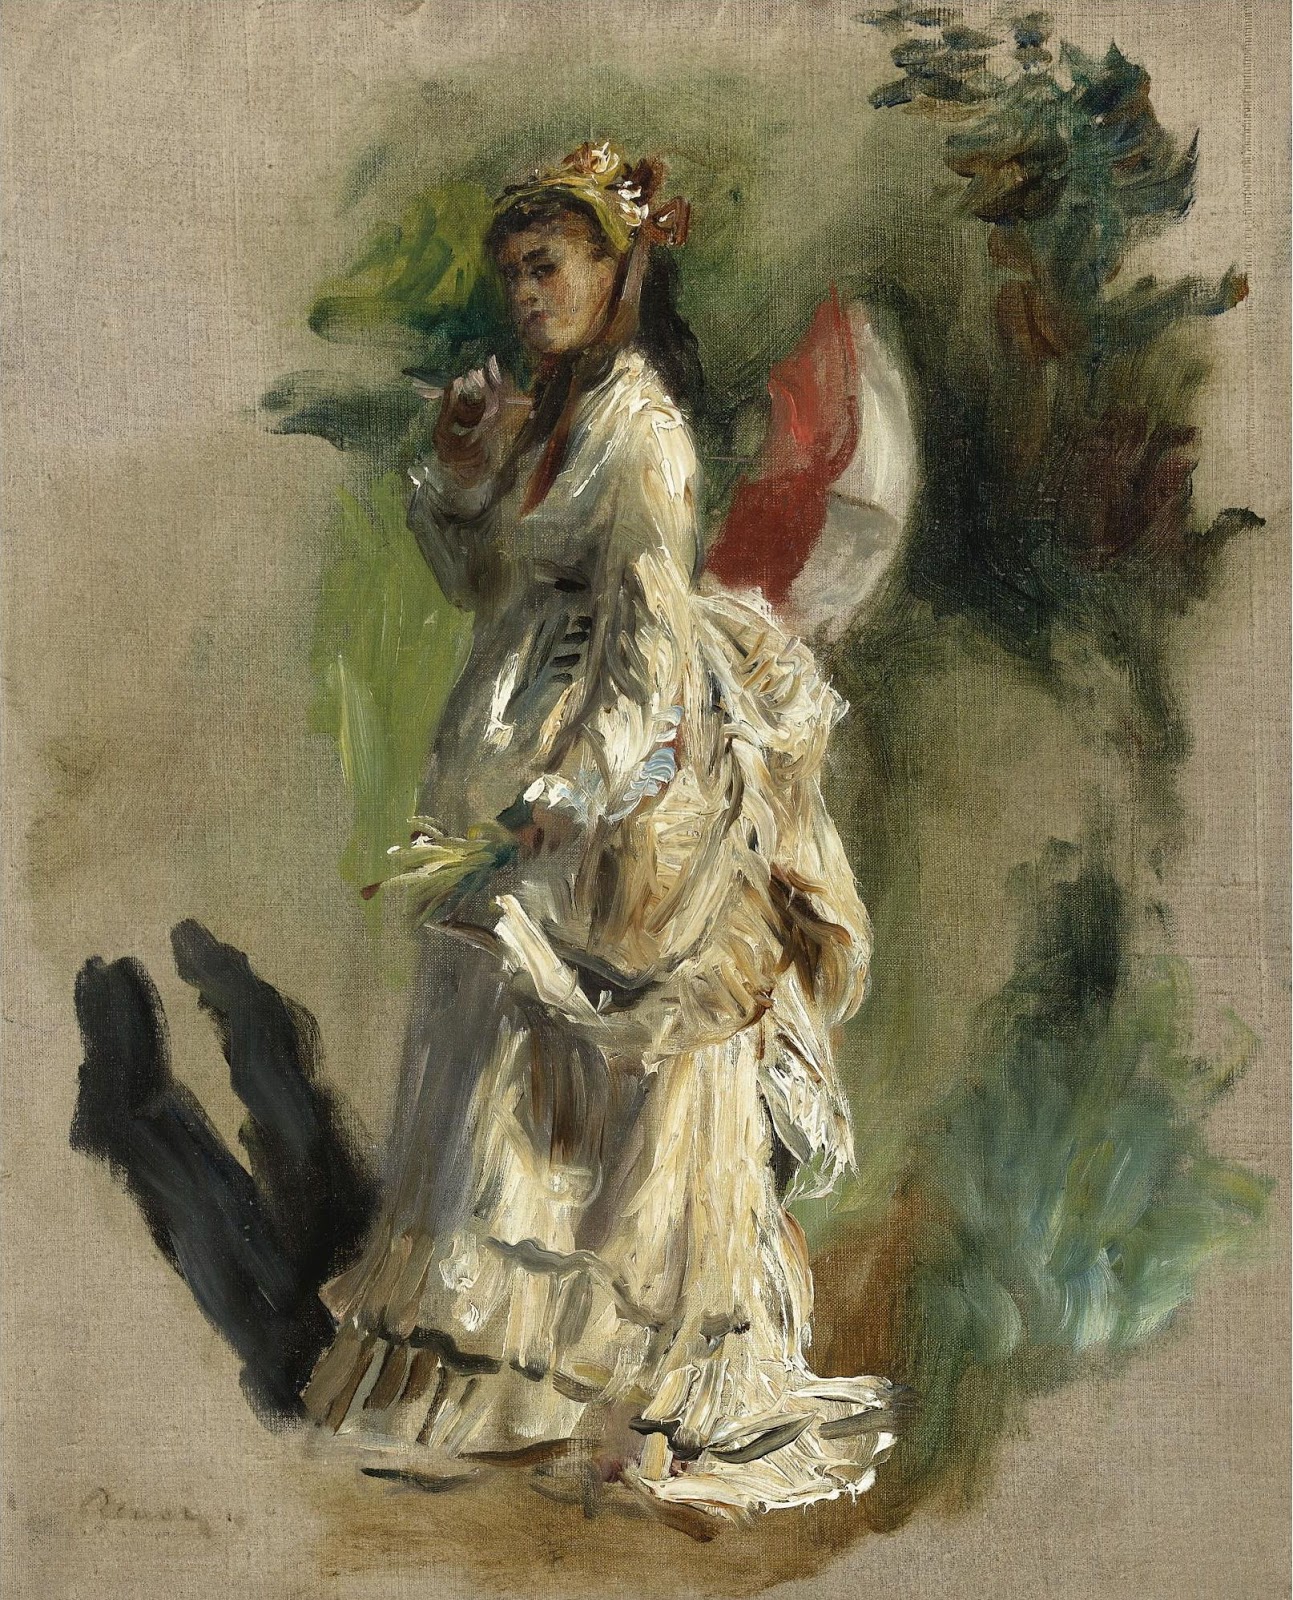 Pierre+Auguste+Renoir-1841-1-19 (903).jpg